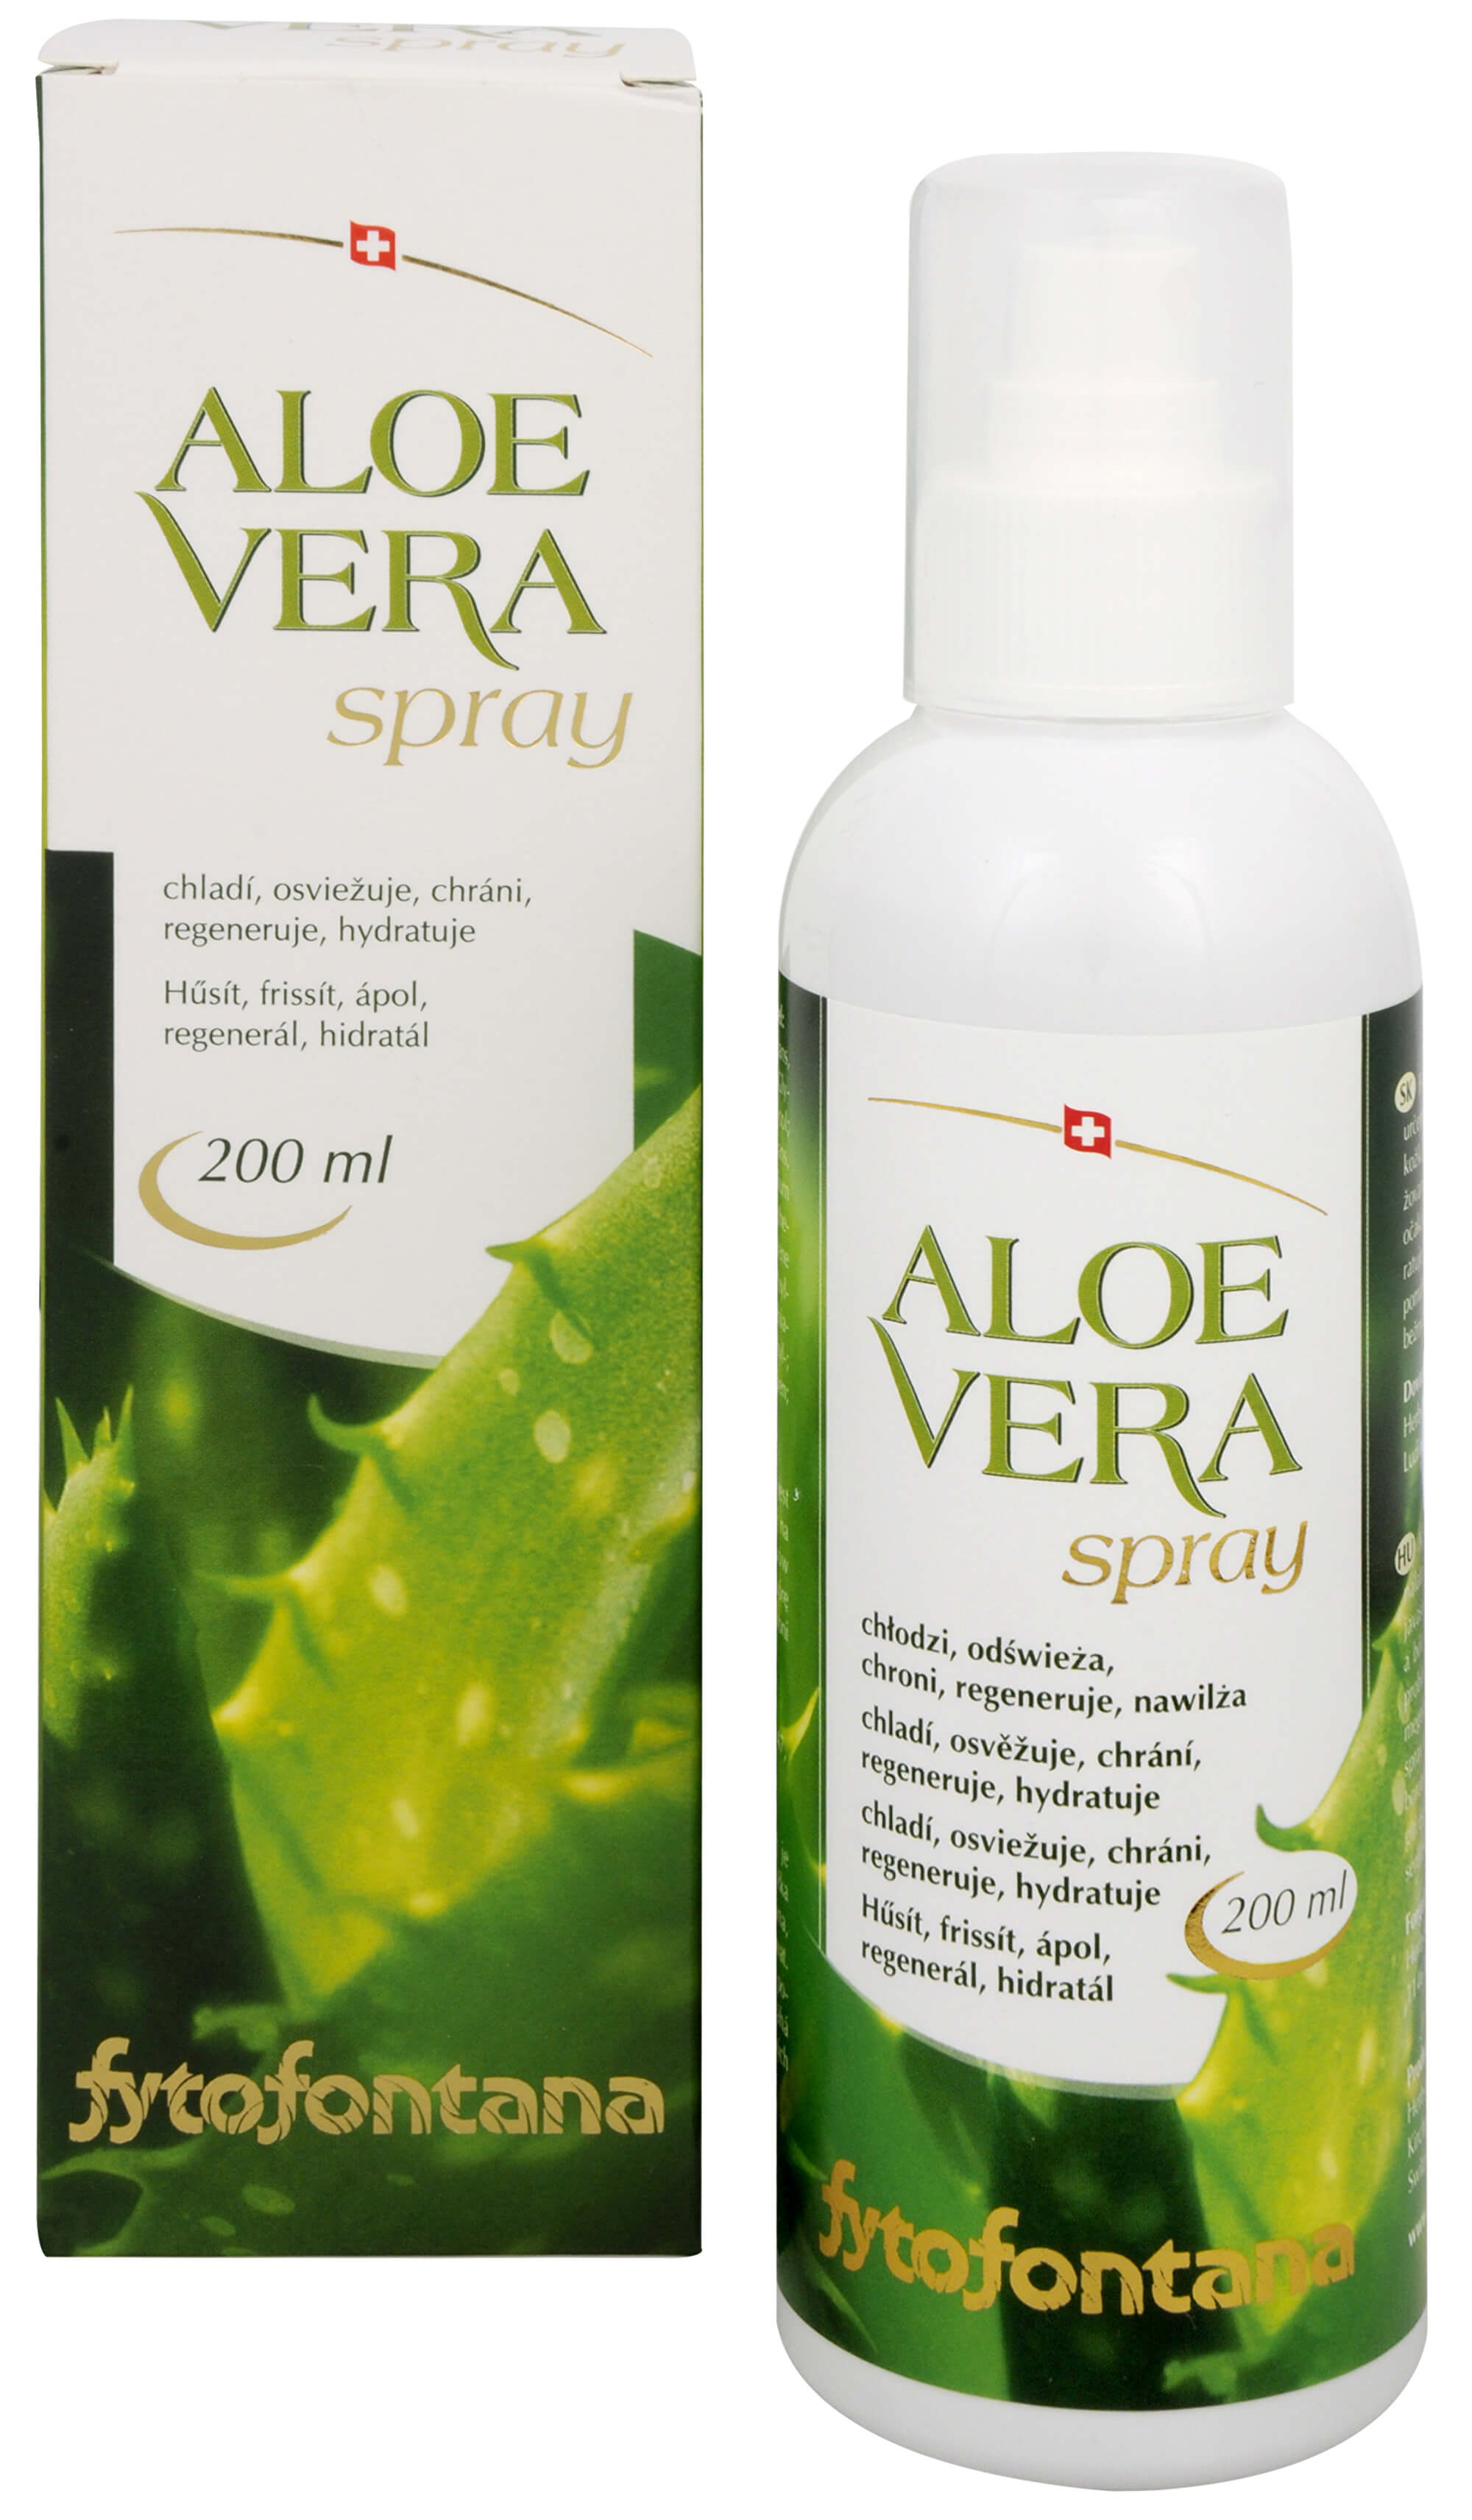 Zobrazit detail výrobku Fytofontana Aloe vera spray 200 ml + 2 měsíce na vrácení zboží